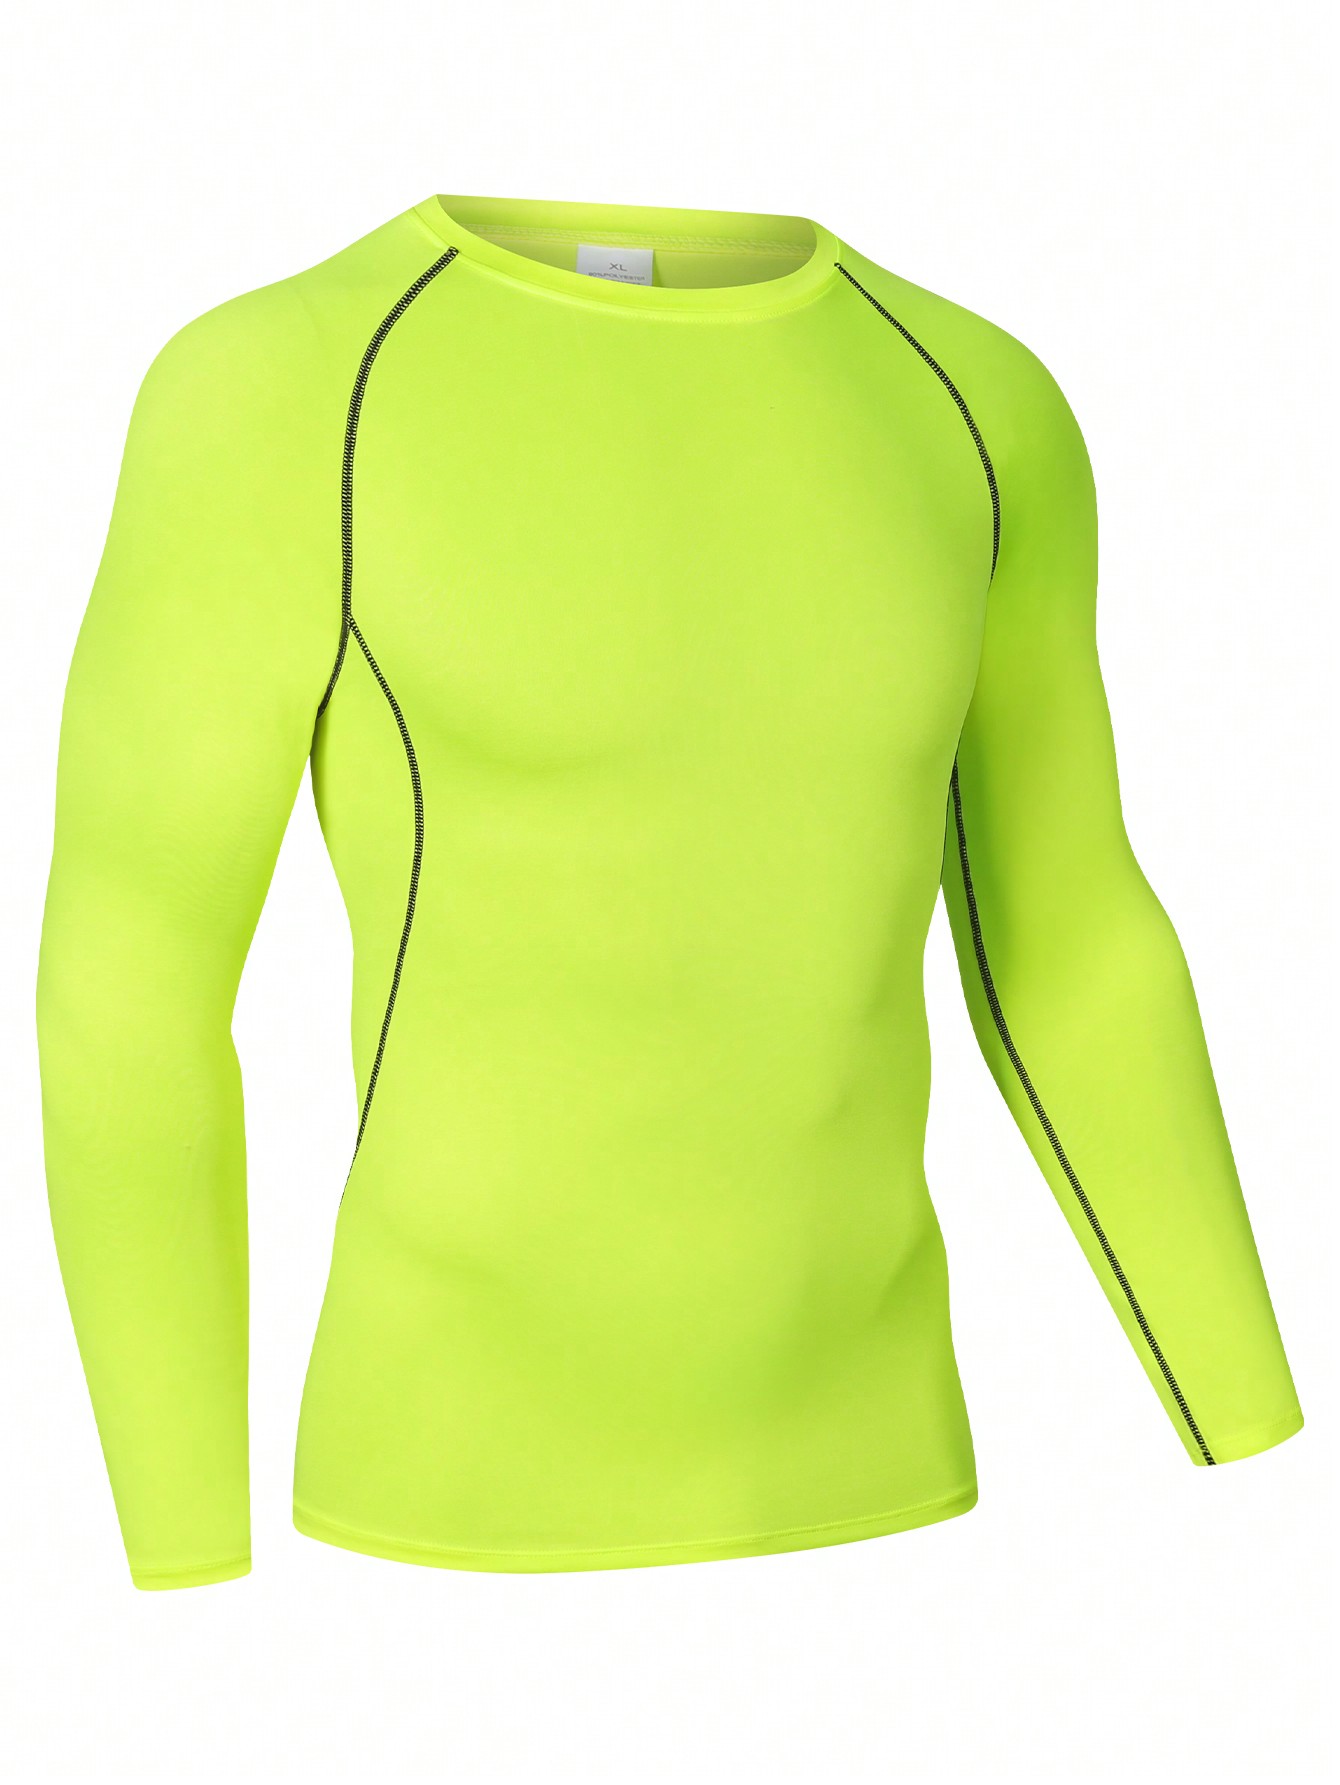 Мужская эластичная компрессионная рубашка для фитнеса с длинными рукавами, зеленый